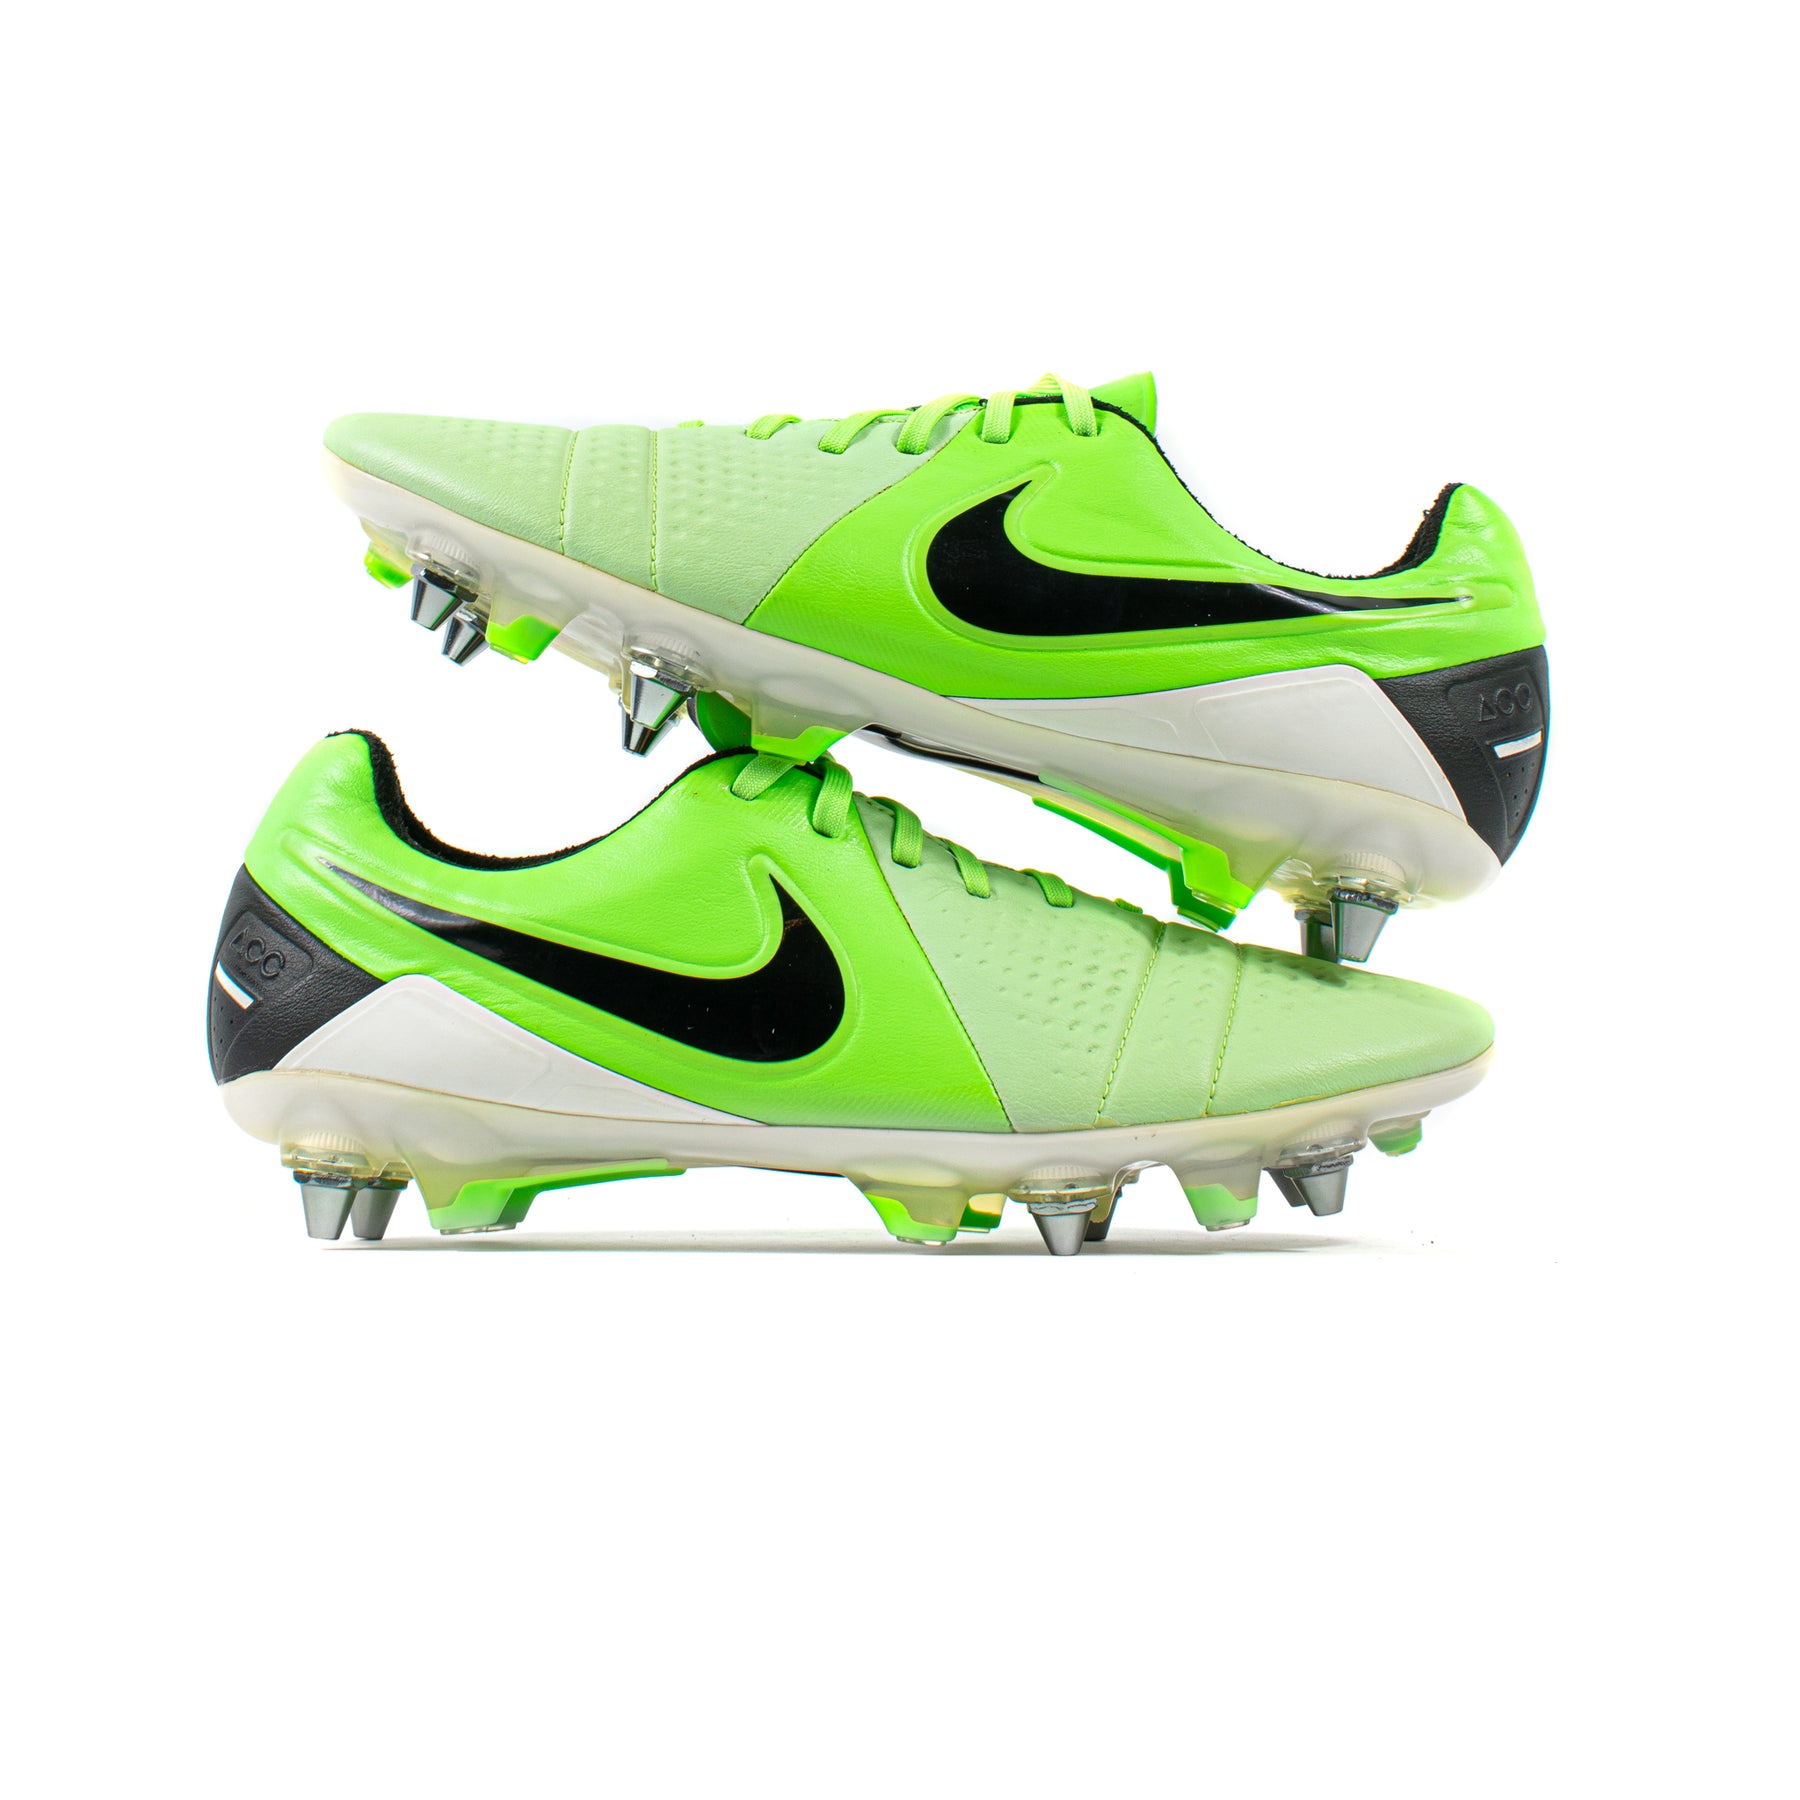 Nike CTR360 Maestri III Green – Classic Soccer Cleats